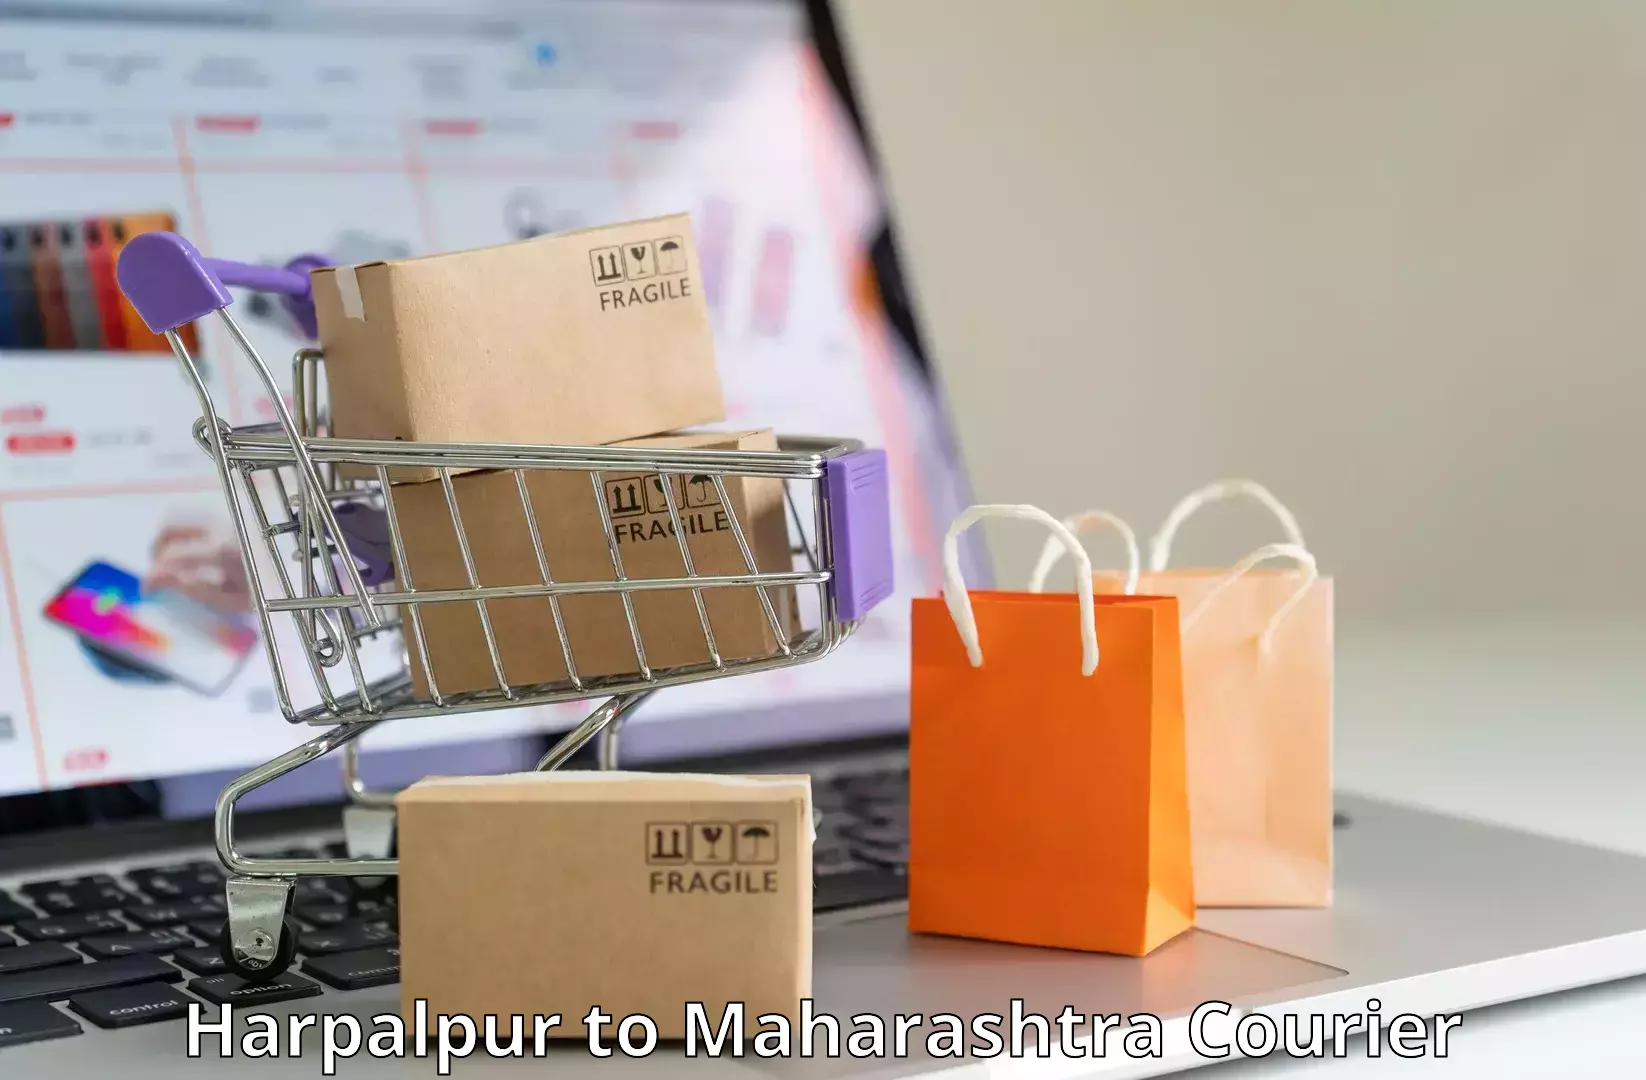 Courier service comparison in Harpalpur to Shirdi